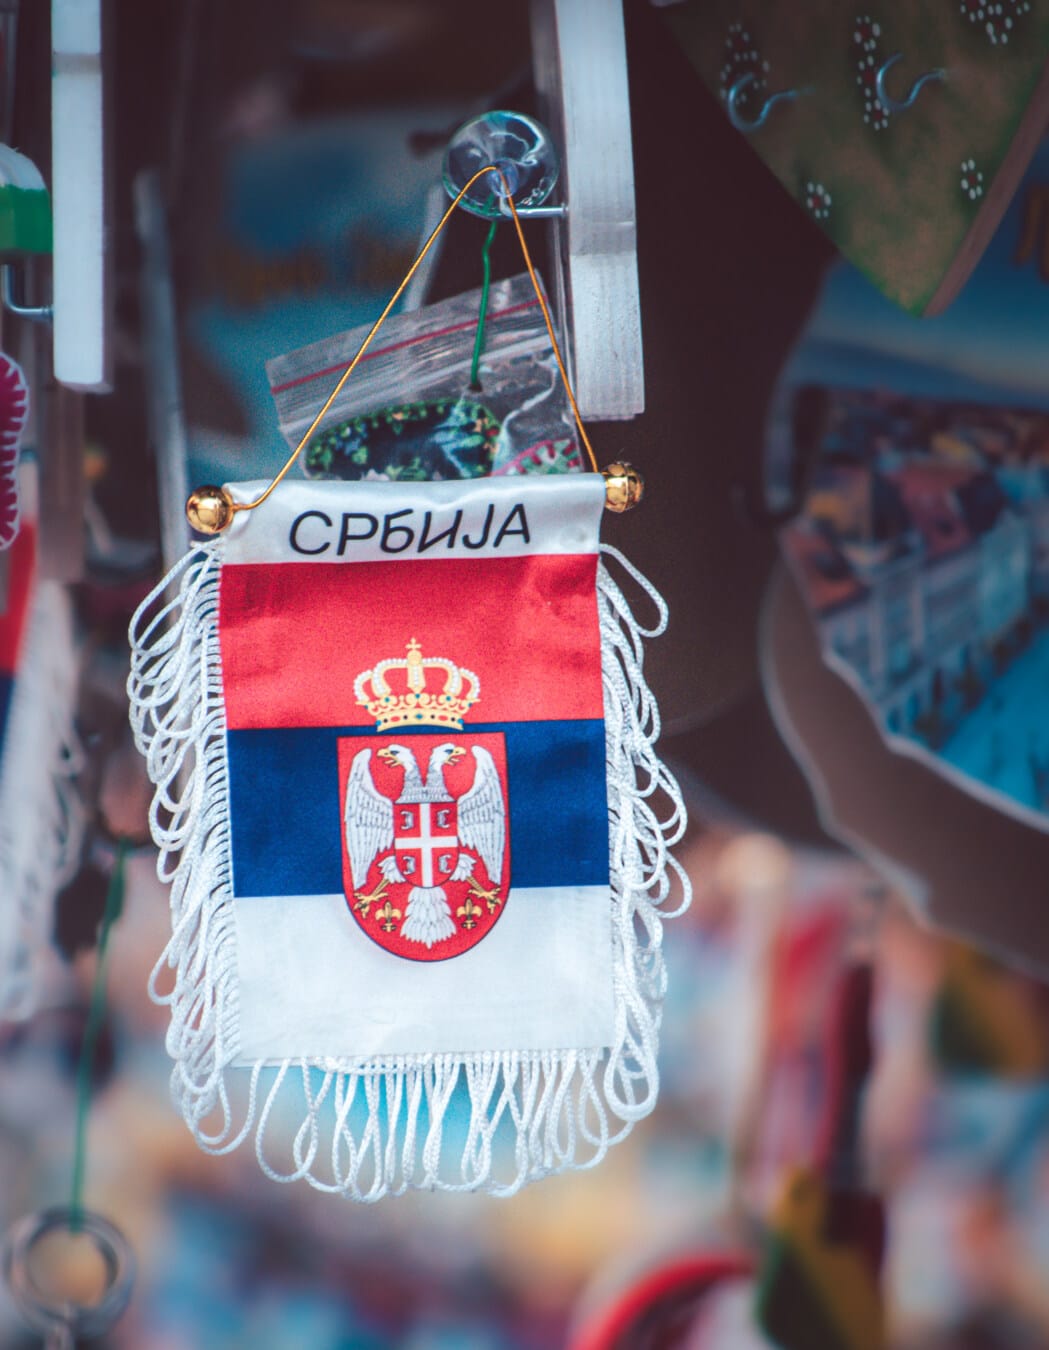 Κρεμαστά, Σερβία, σημαία, αναμνηστικά, νοσταλγία, τουριστικό αξιοθέατο, Ψώνια, Οδός, αγορά, παραδοσιακό